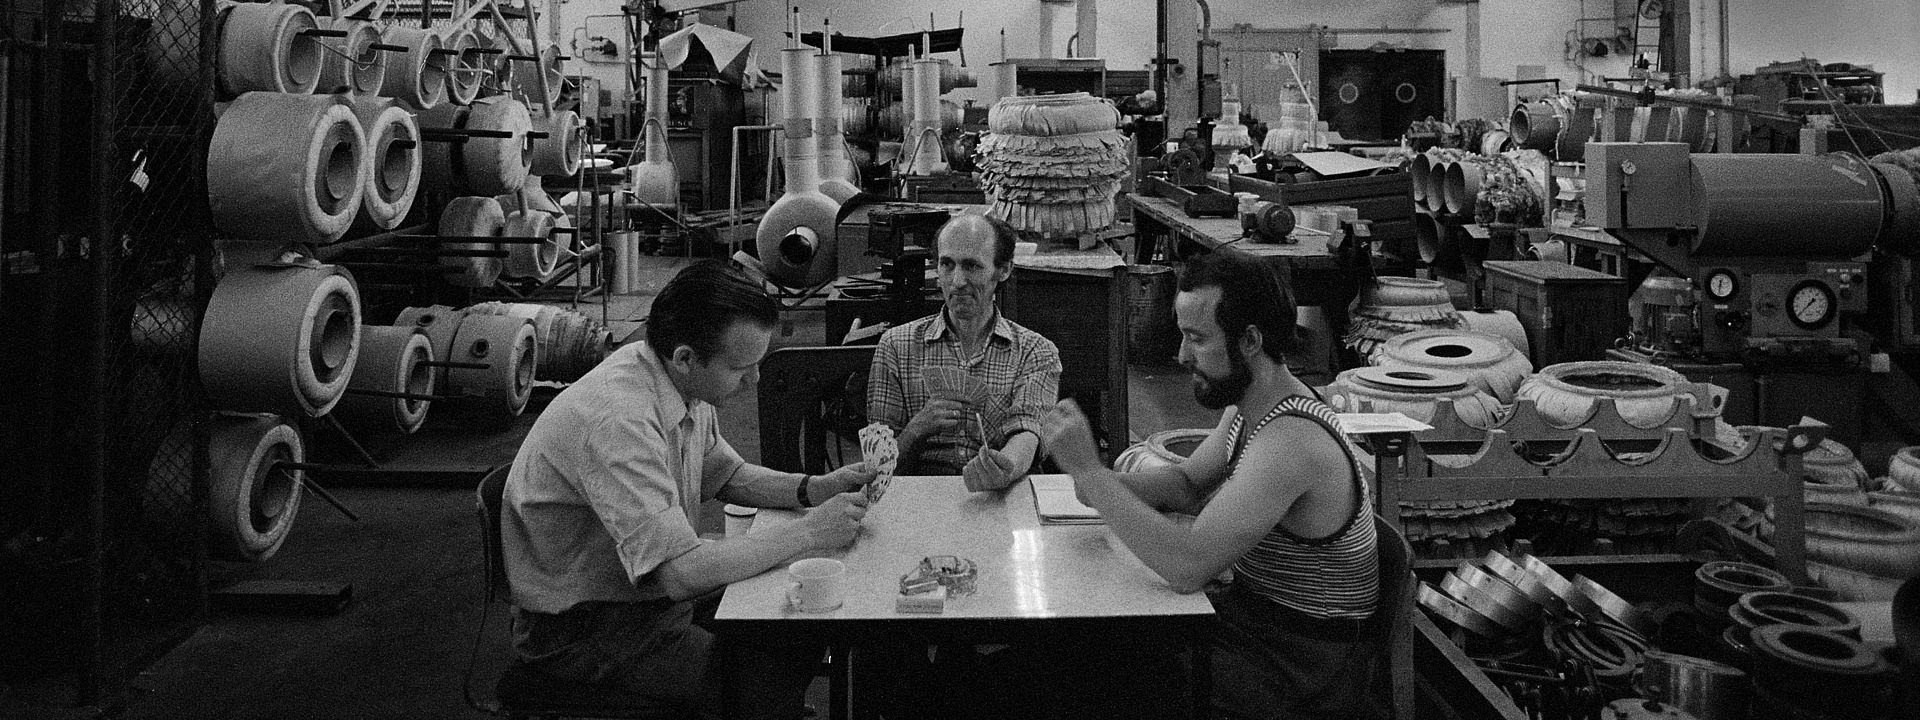 Auf dem Foto sieht man drei Männer, die an einem Tisch mitten in einer riesigen Werkshalle sitzen und Karten spielen.